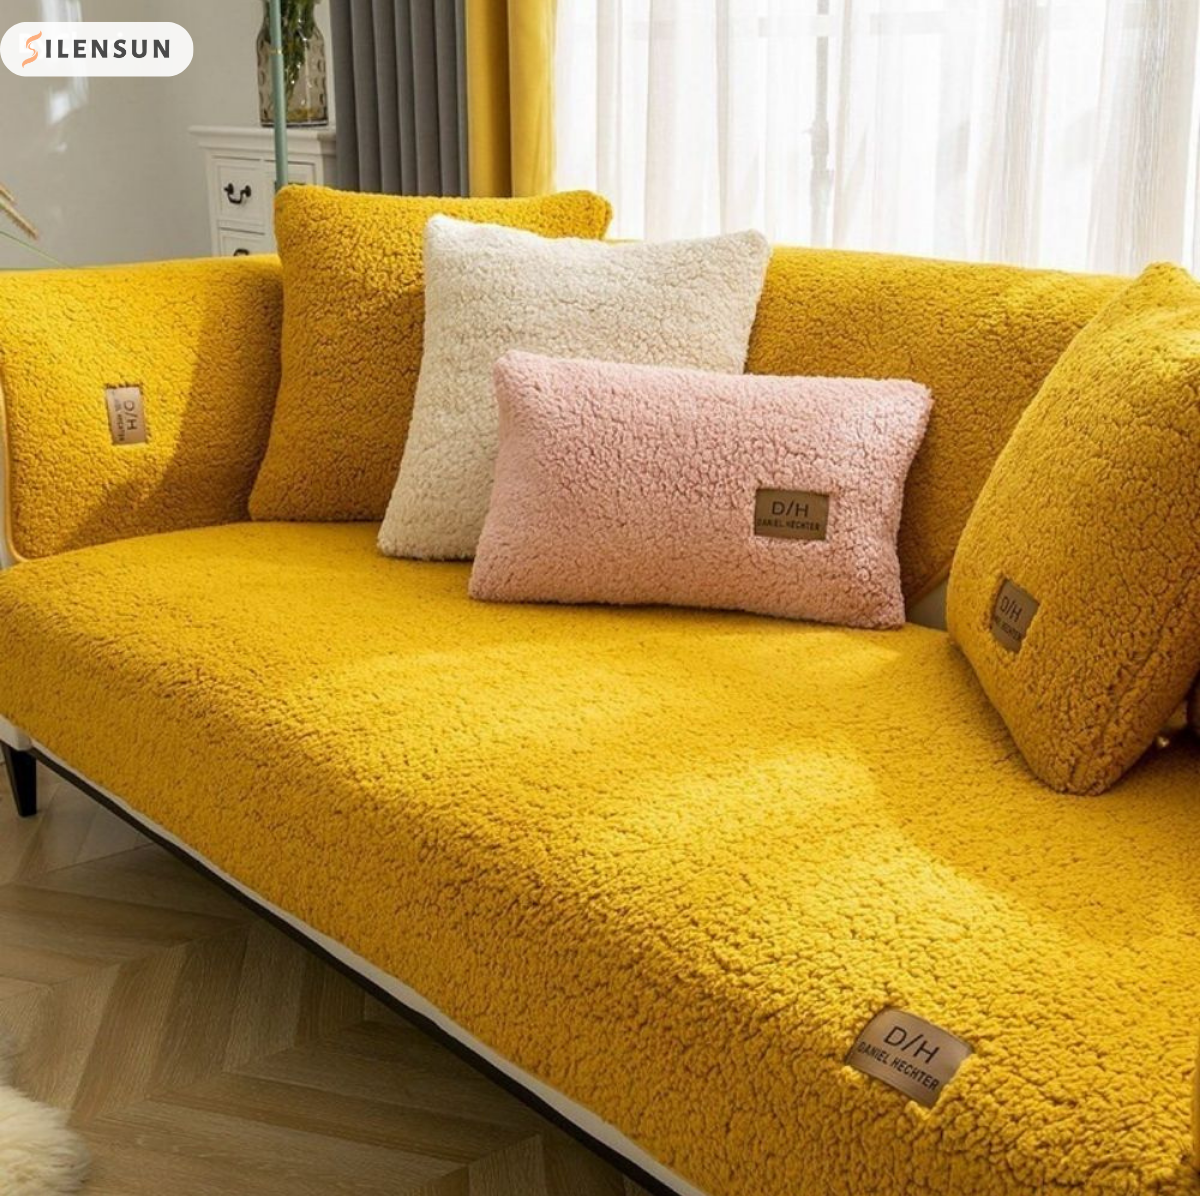 CoverComfort™ - Geben Sie Ihrem Sofa ein zweites Leben!  1+1 GRATIS